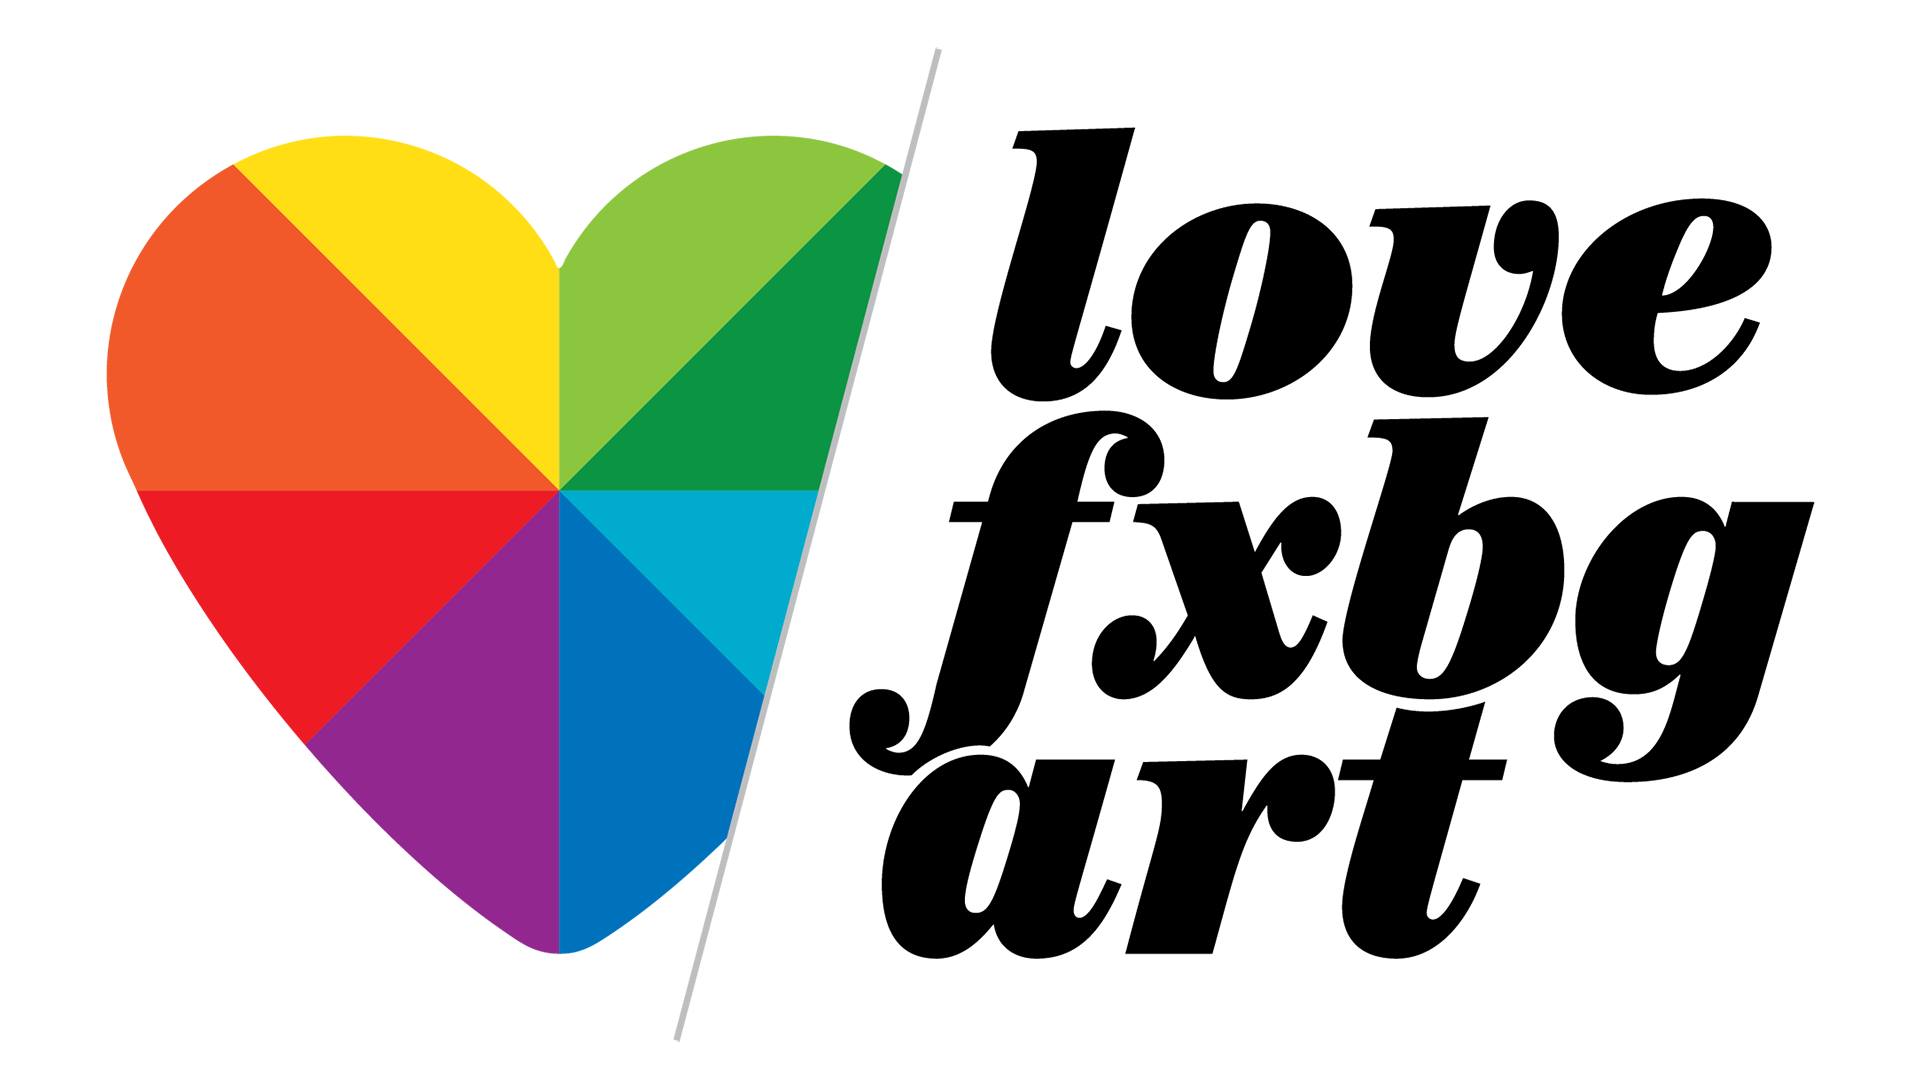 Love FXBG online art sale planned Feb. 5-7